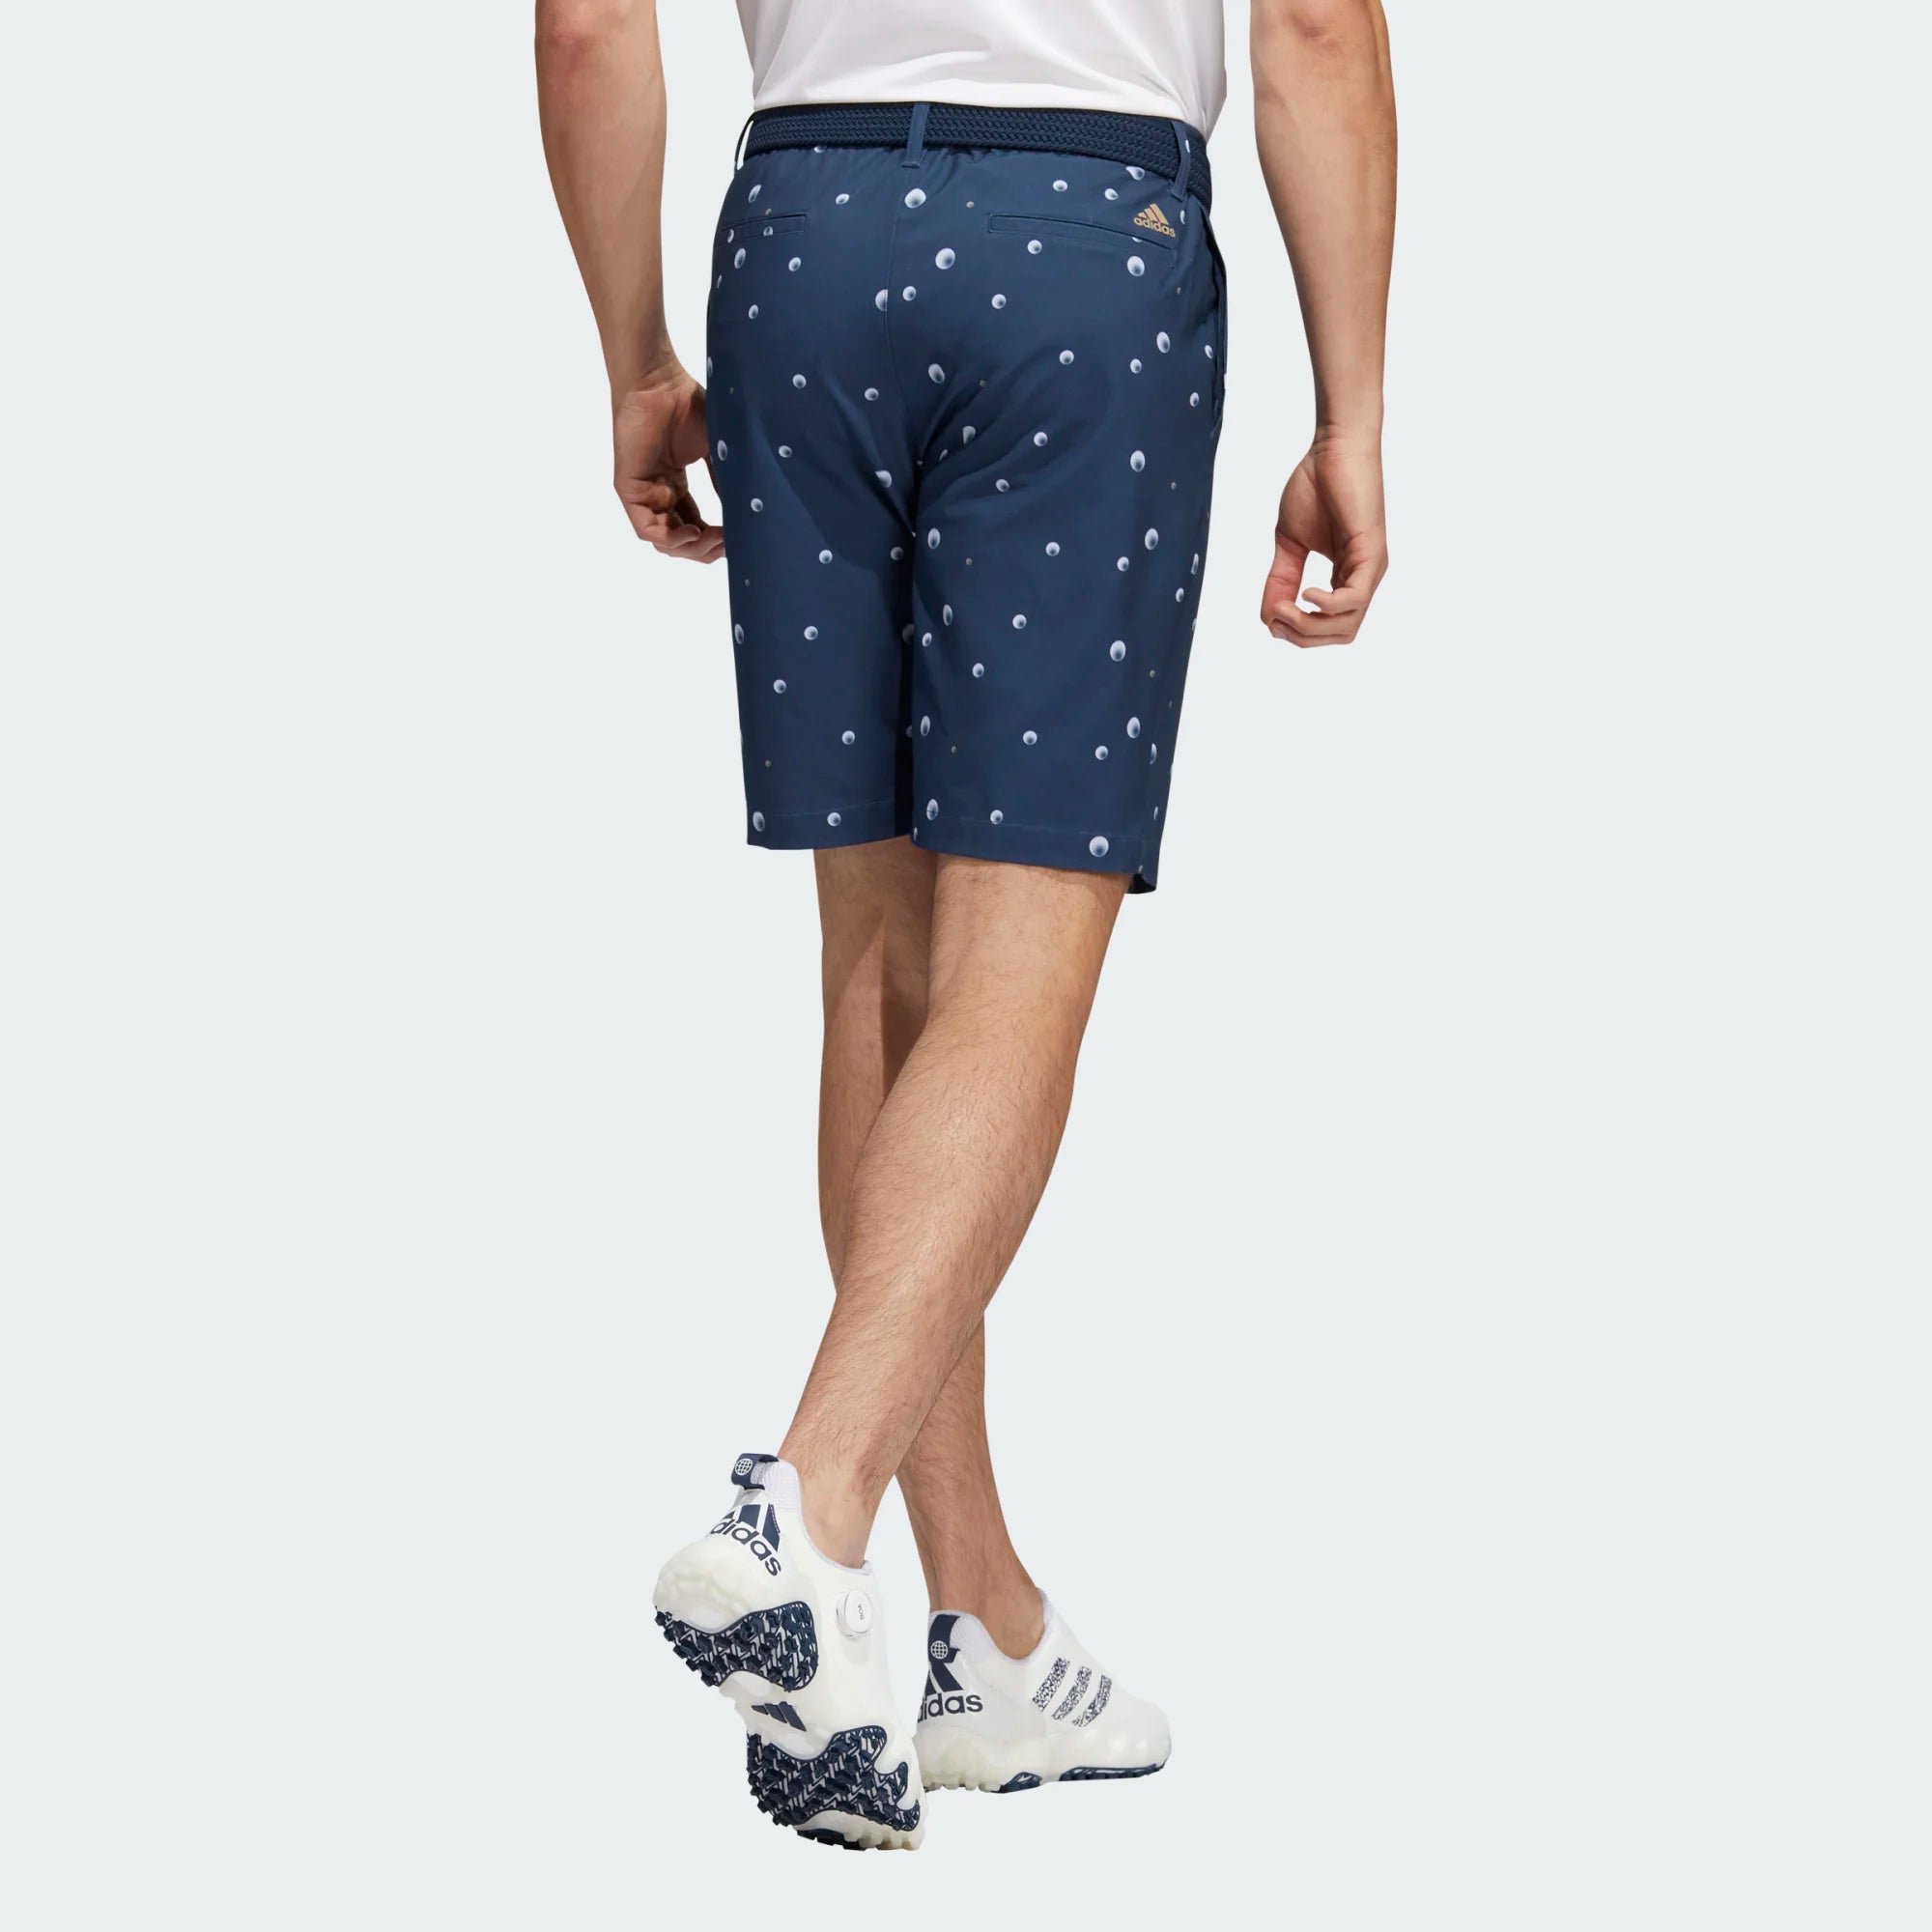 adidas Ultimate365 Allover Print Golf Shorts ADIDAS MENS SHORTS ADIDAS 